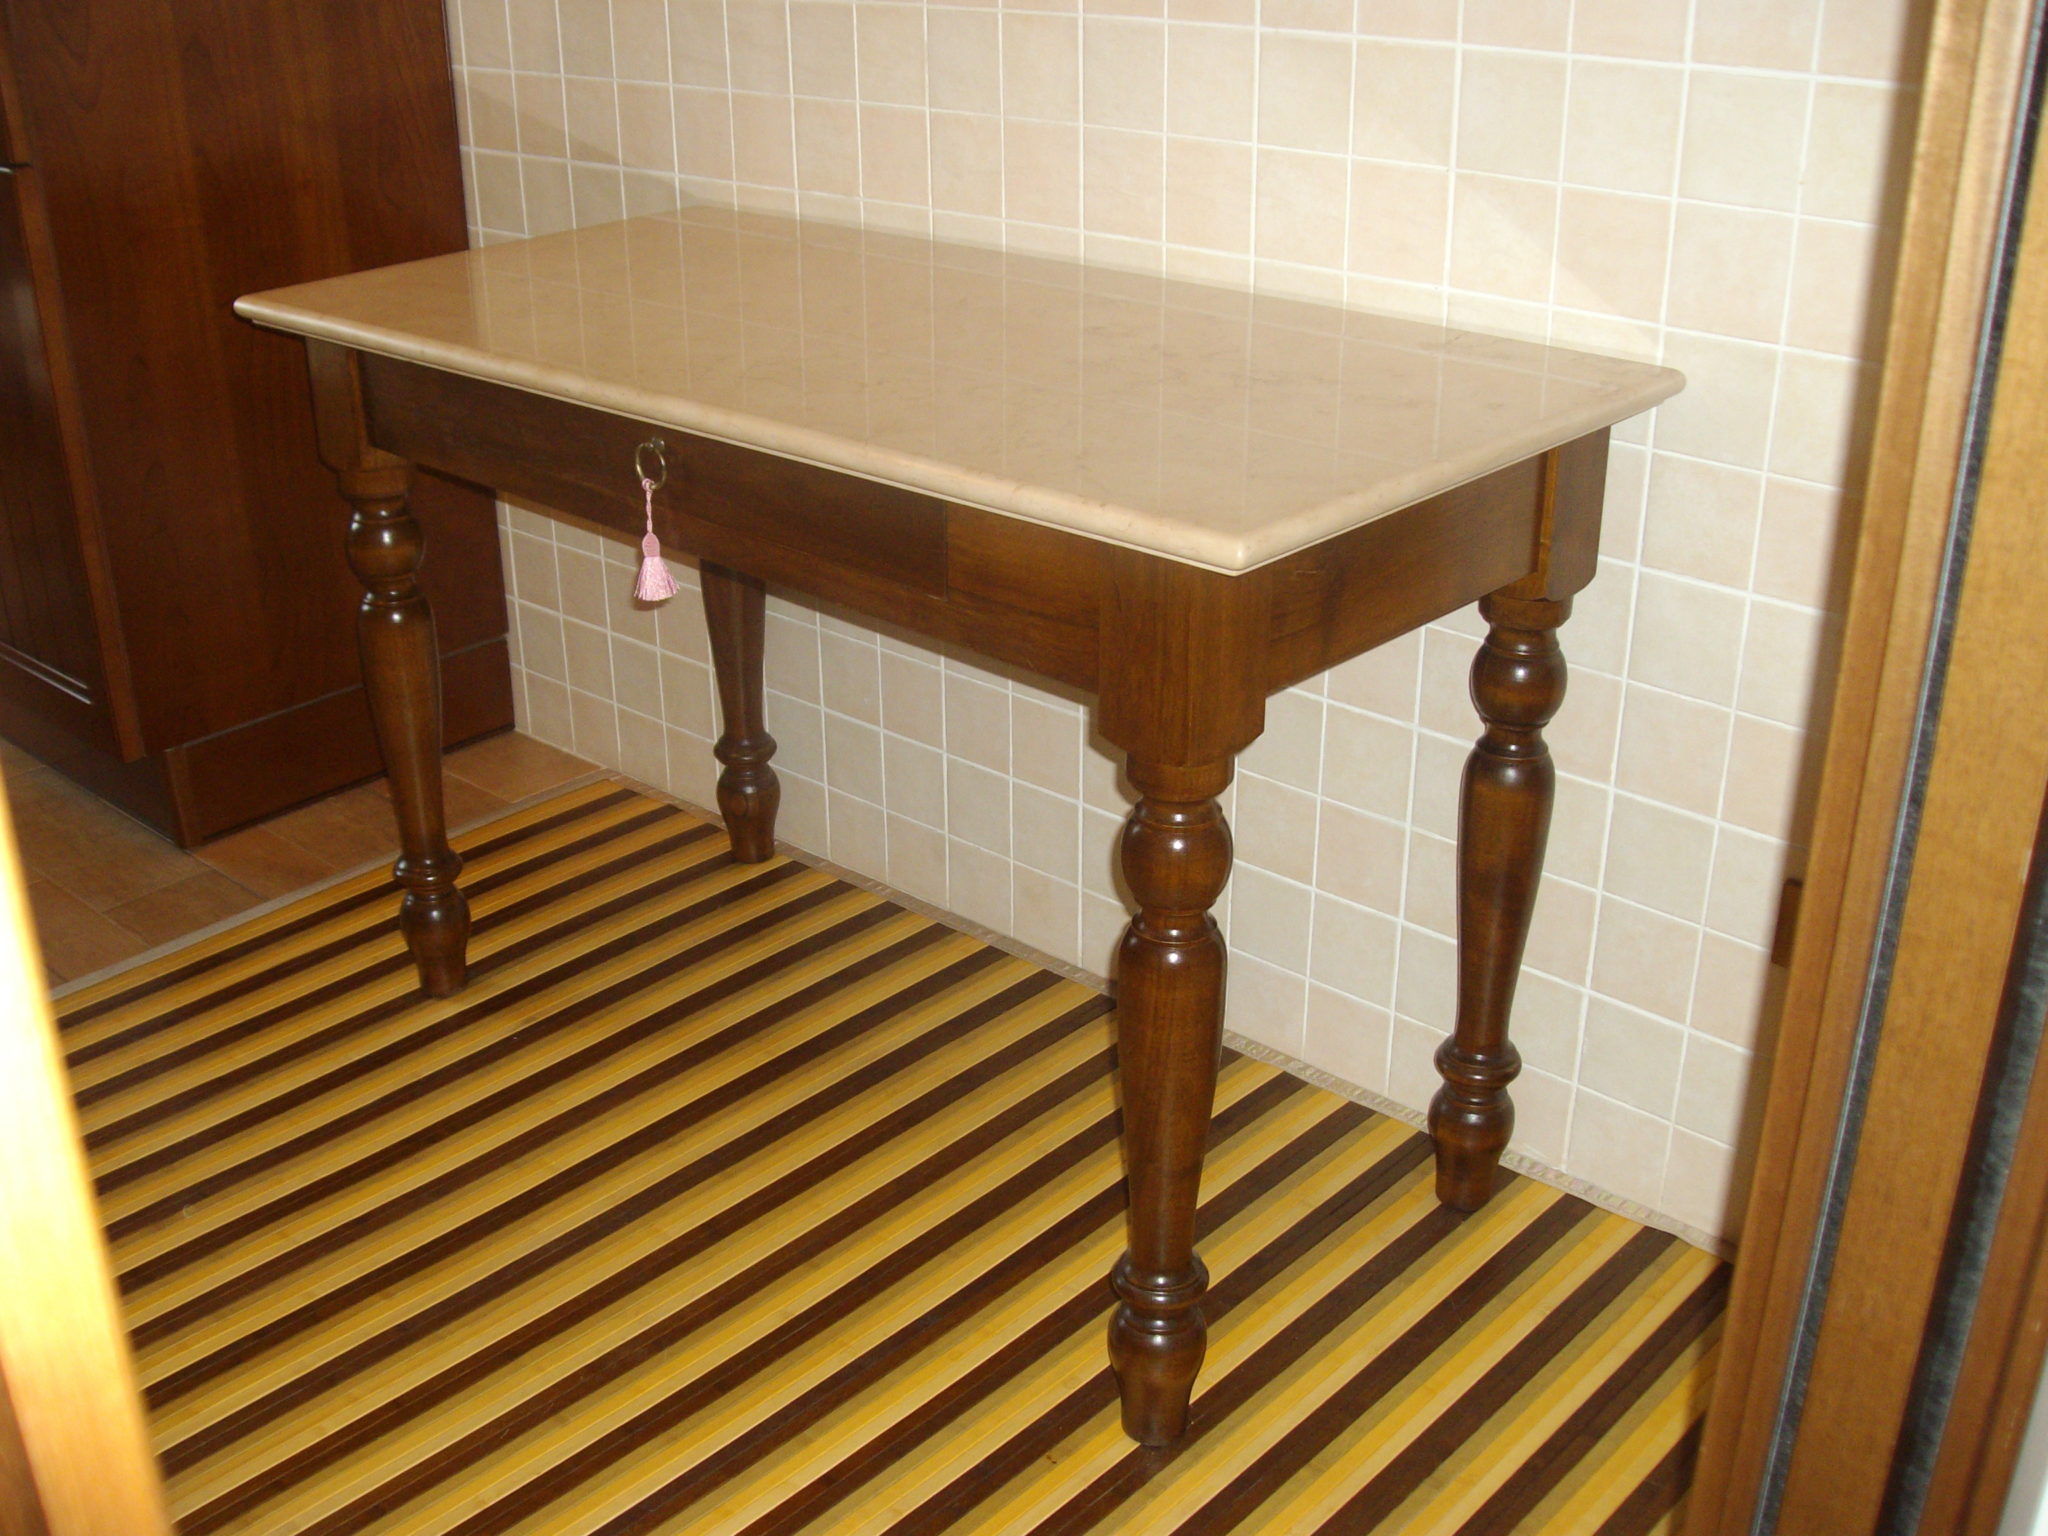 tavoli in legno massello